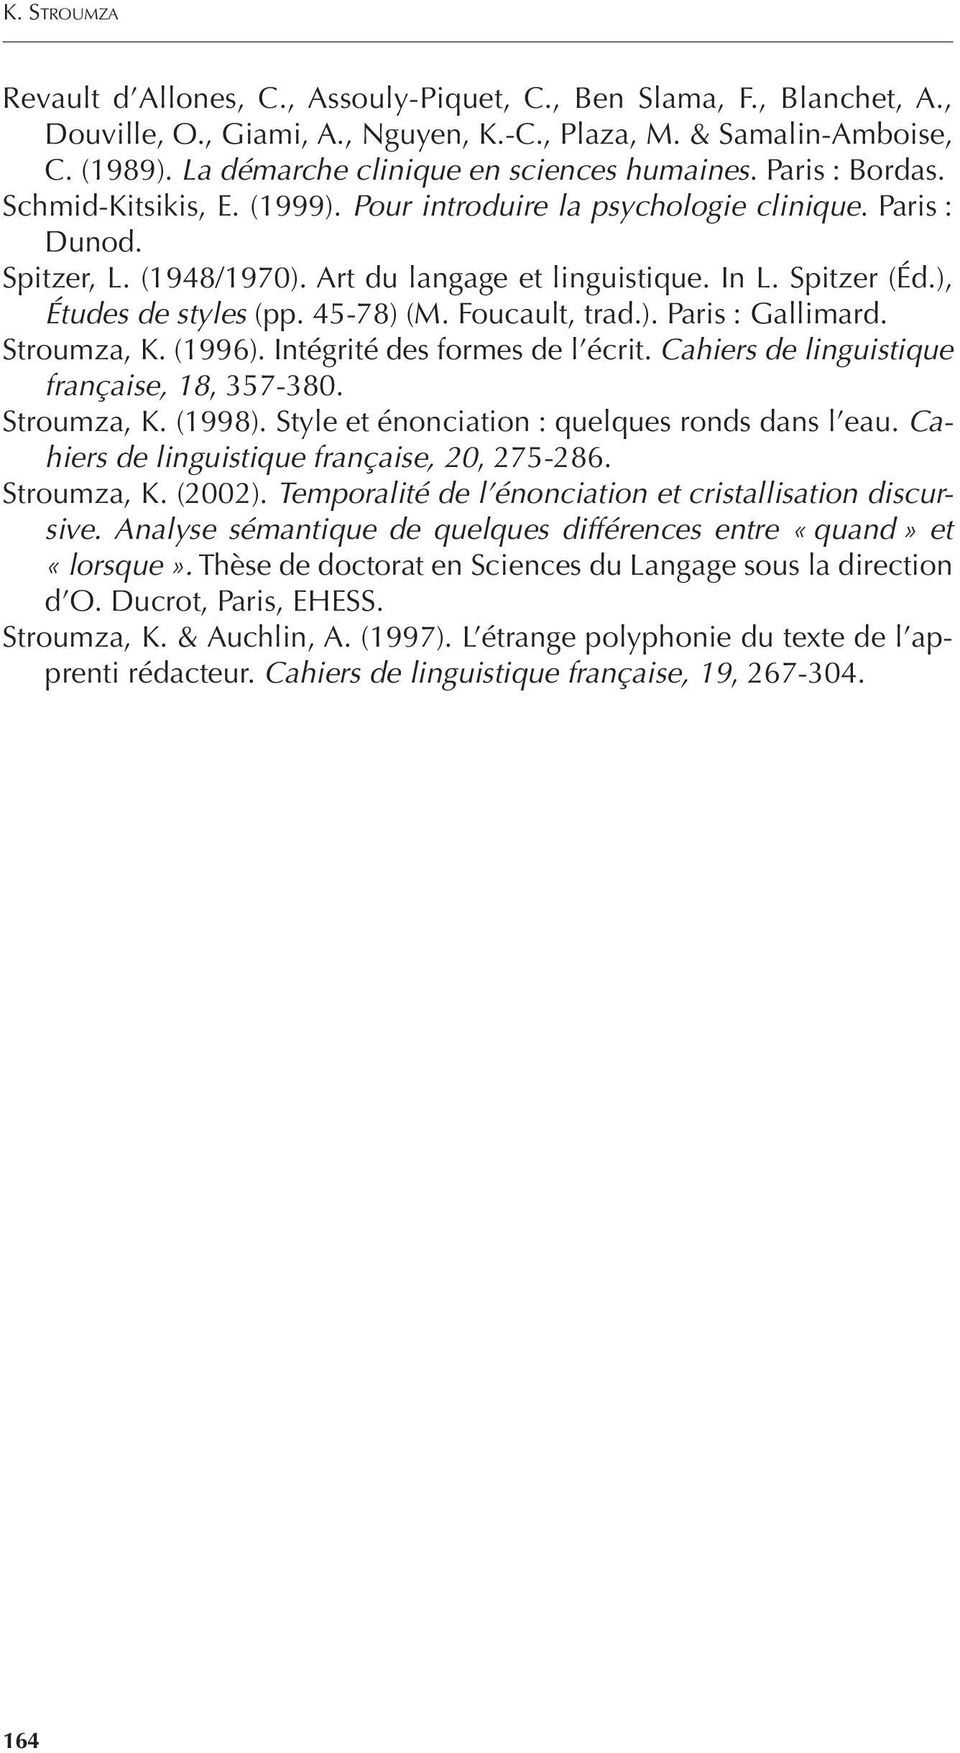 In L. Spitzer (Éd.), Études de styles (pp. 45-78) (M. Foucault, trad.). Paris : Gallimard. Stroumza, K. (1996). Intégrité des formes de l écrit. Cahiers de linguistique française, 18, 357-380.